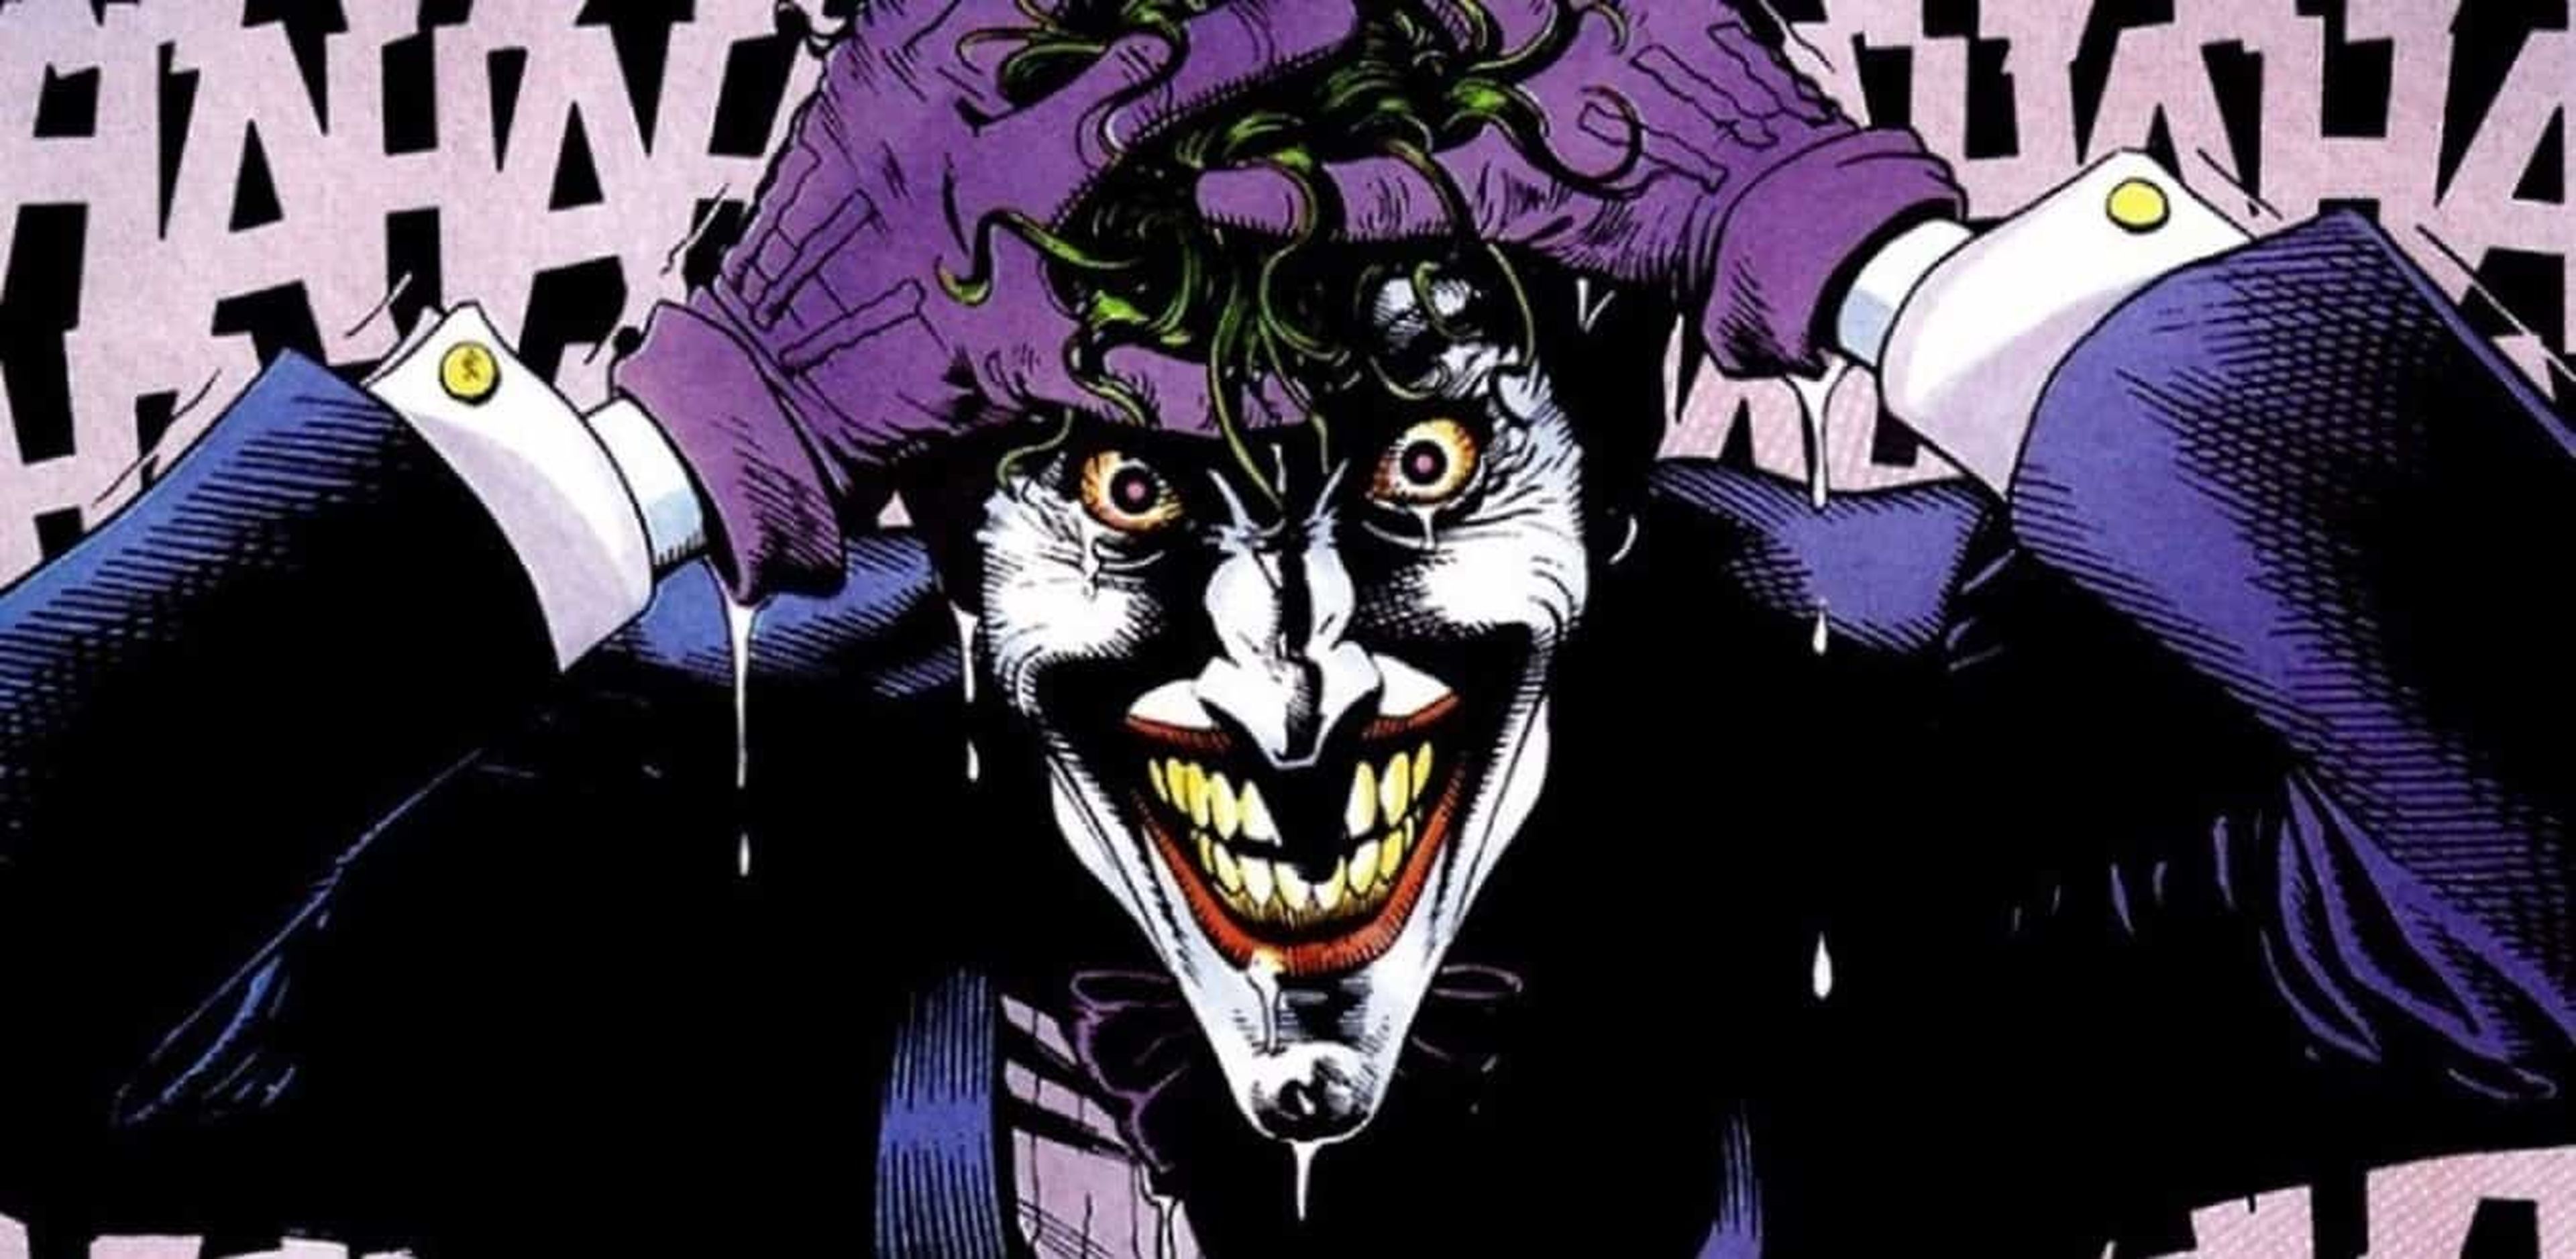 Joker - DC Comics